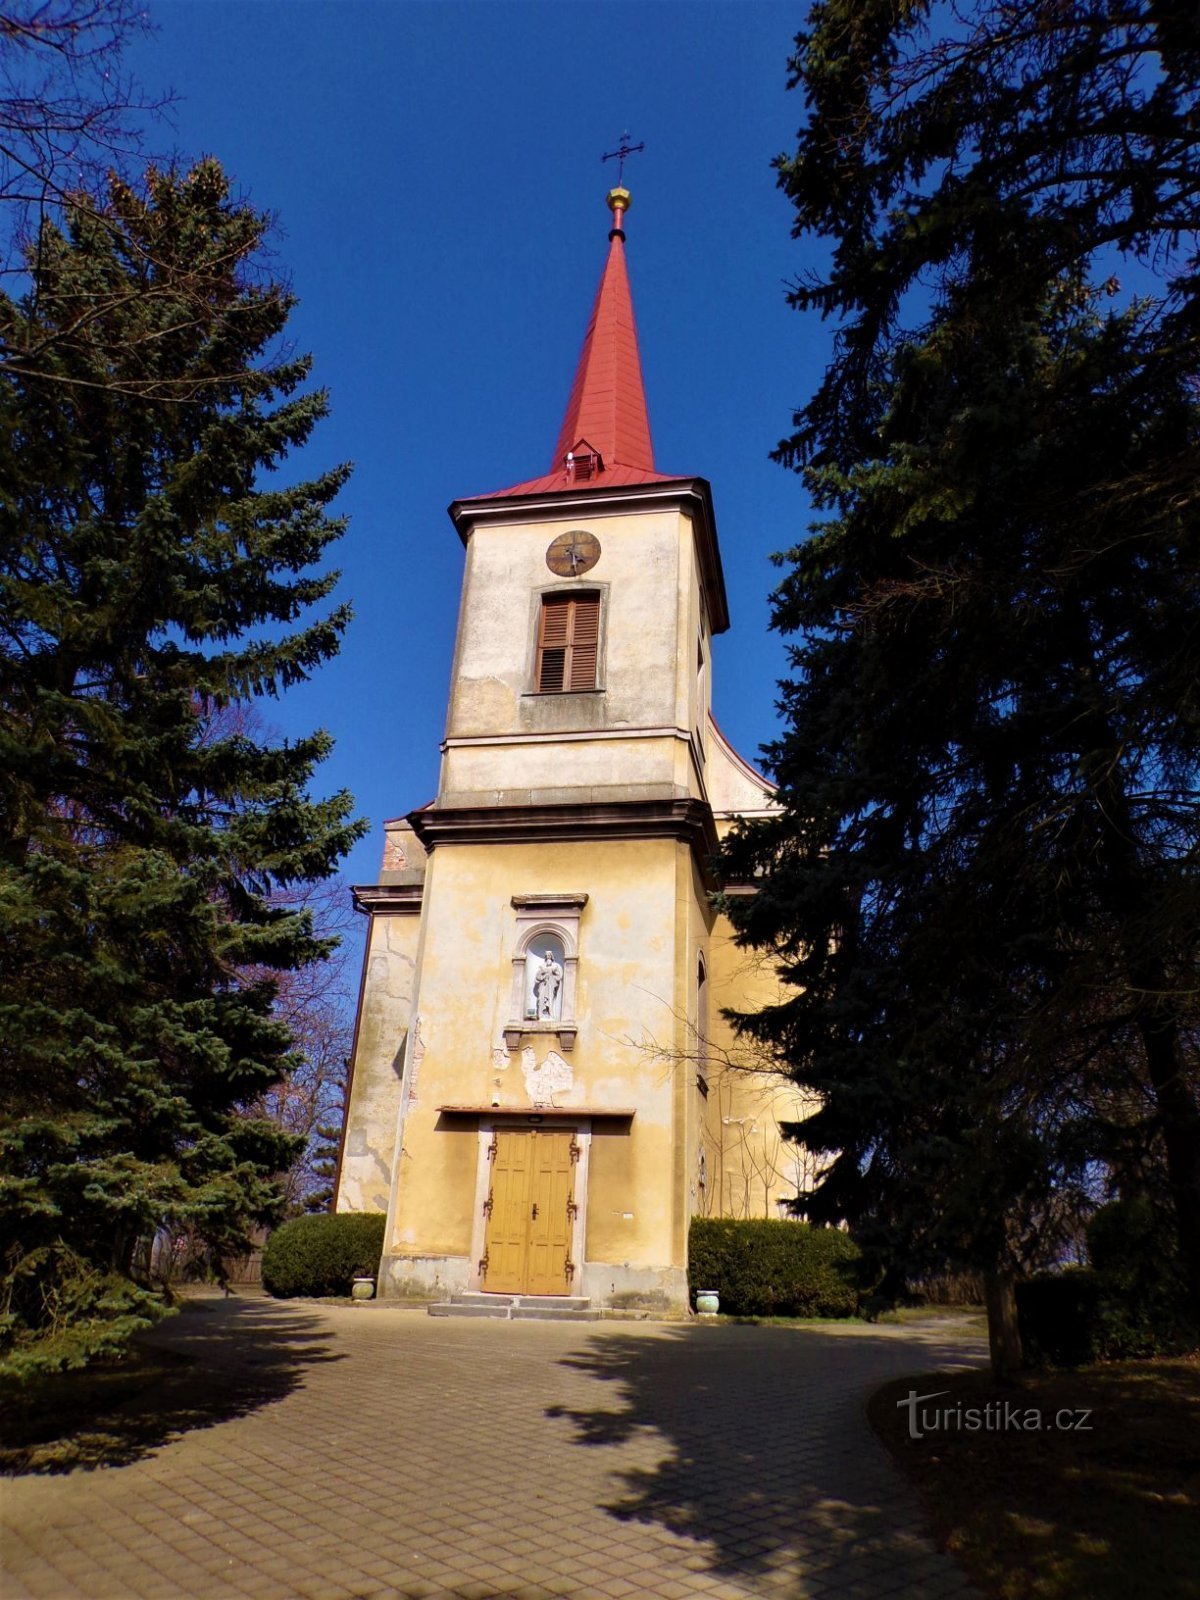 Chiesa di S. Štěpán (Černilov, 25.3.2021 luglio XNUMX)